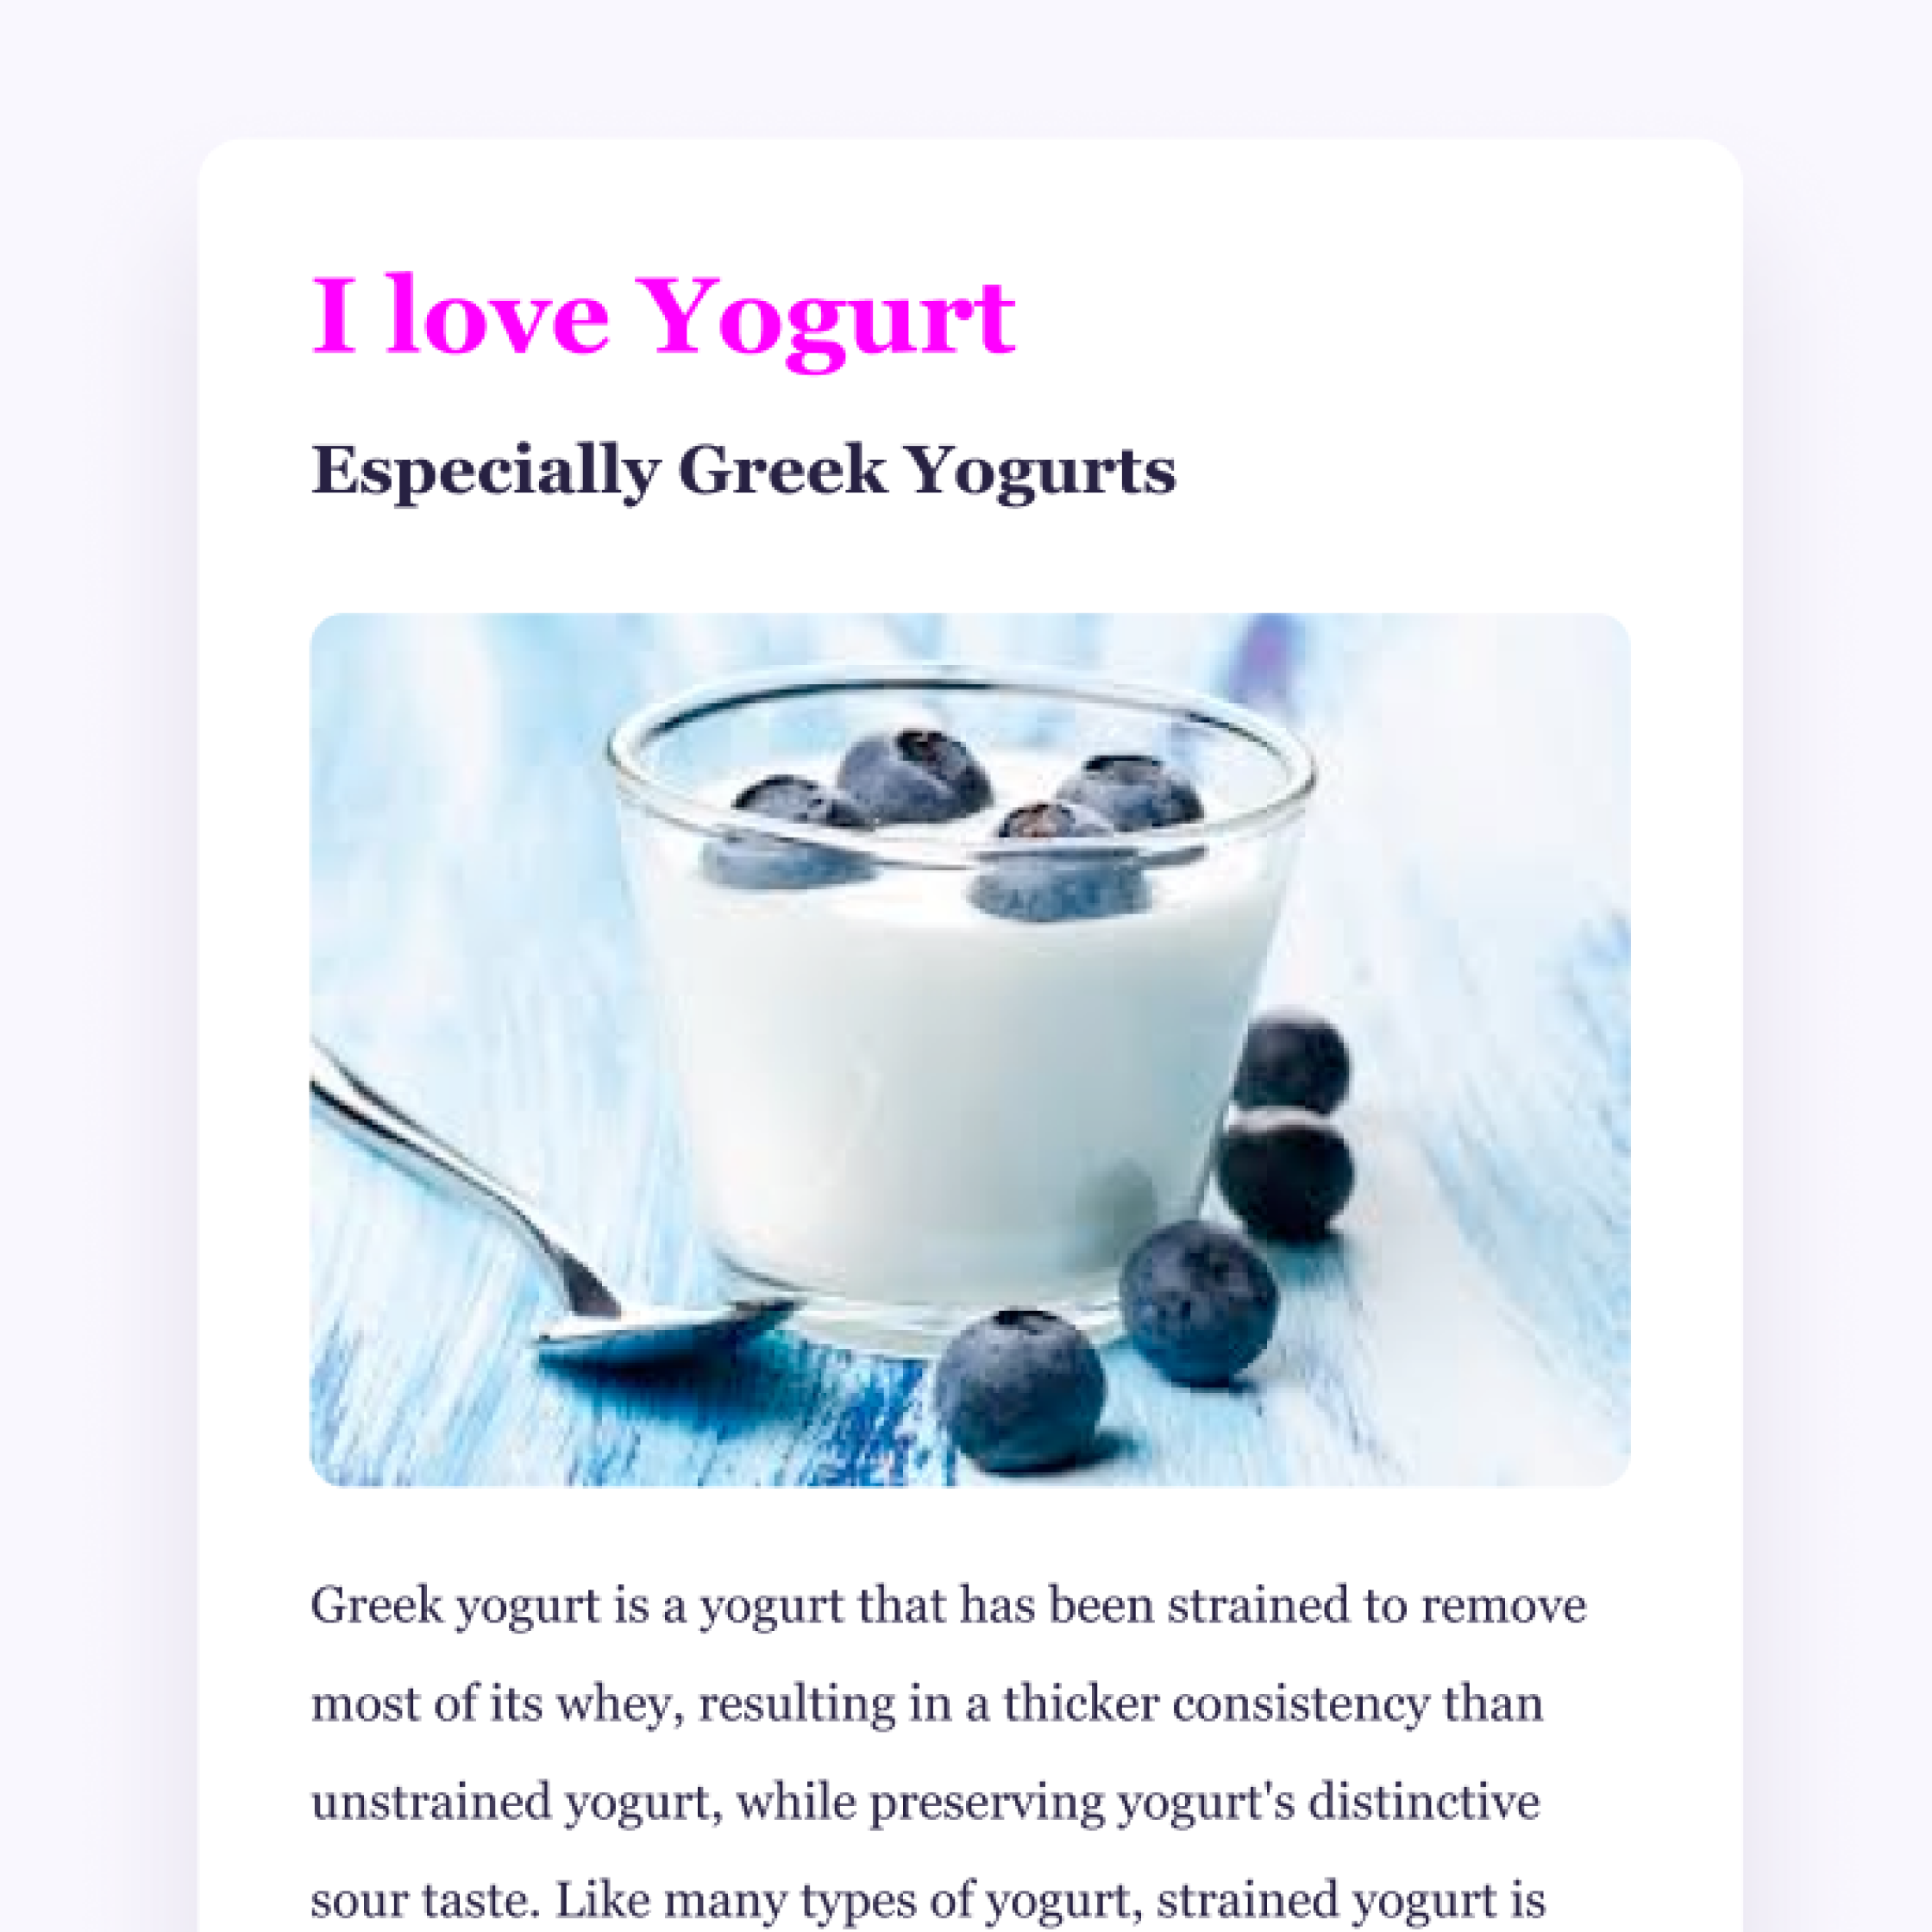 photo of yogurt and blueberries